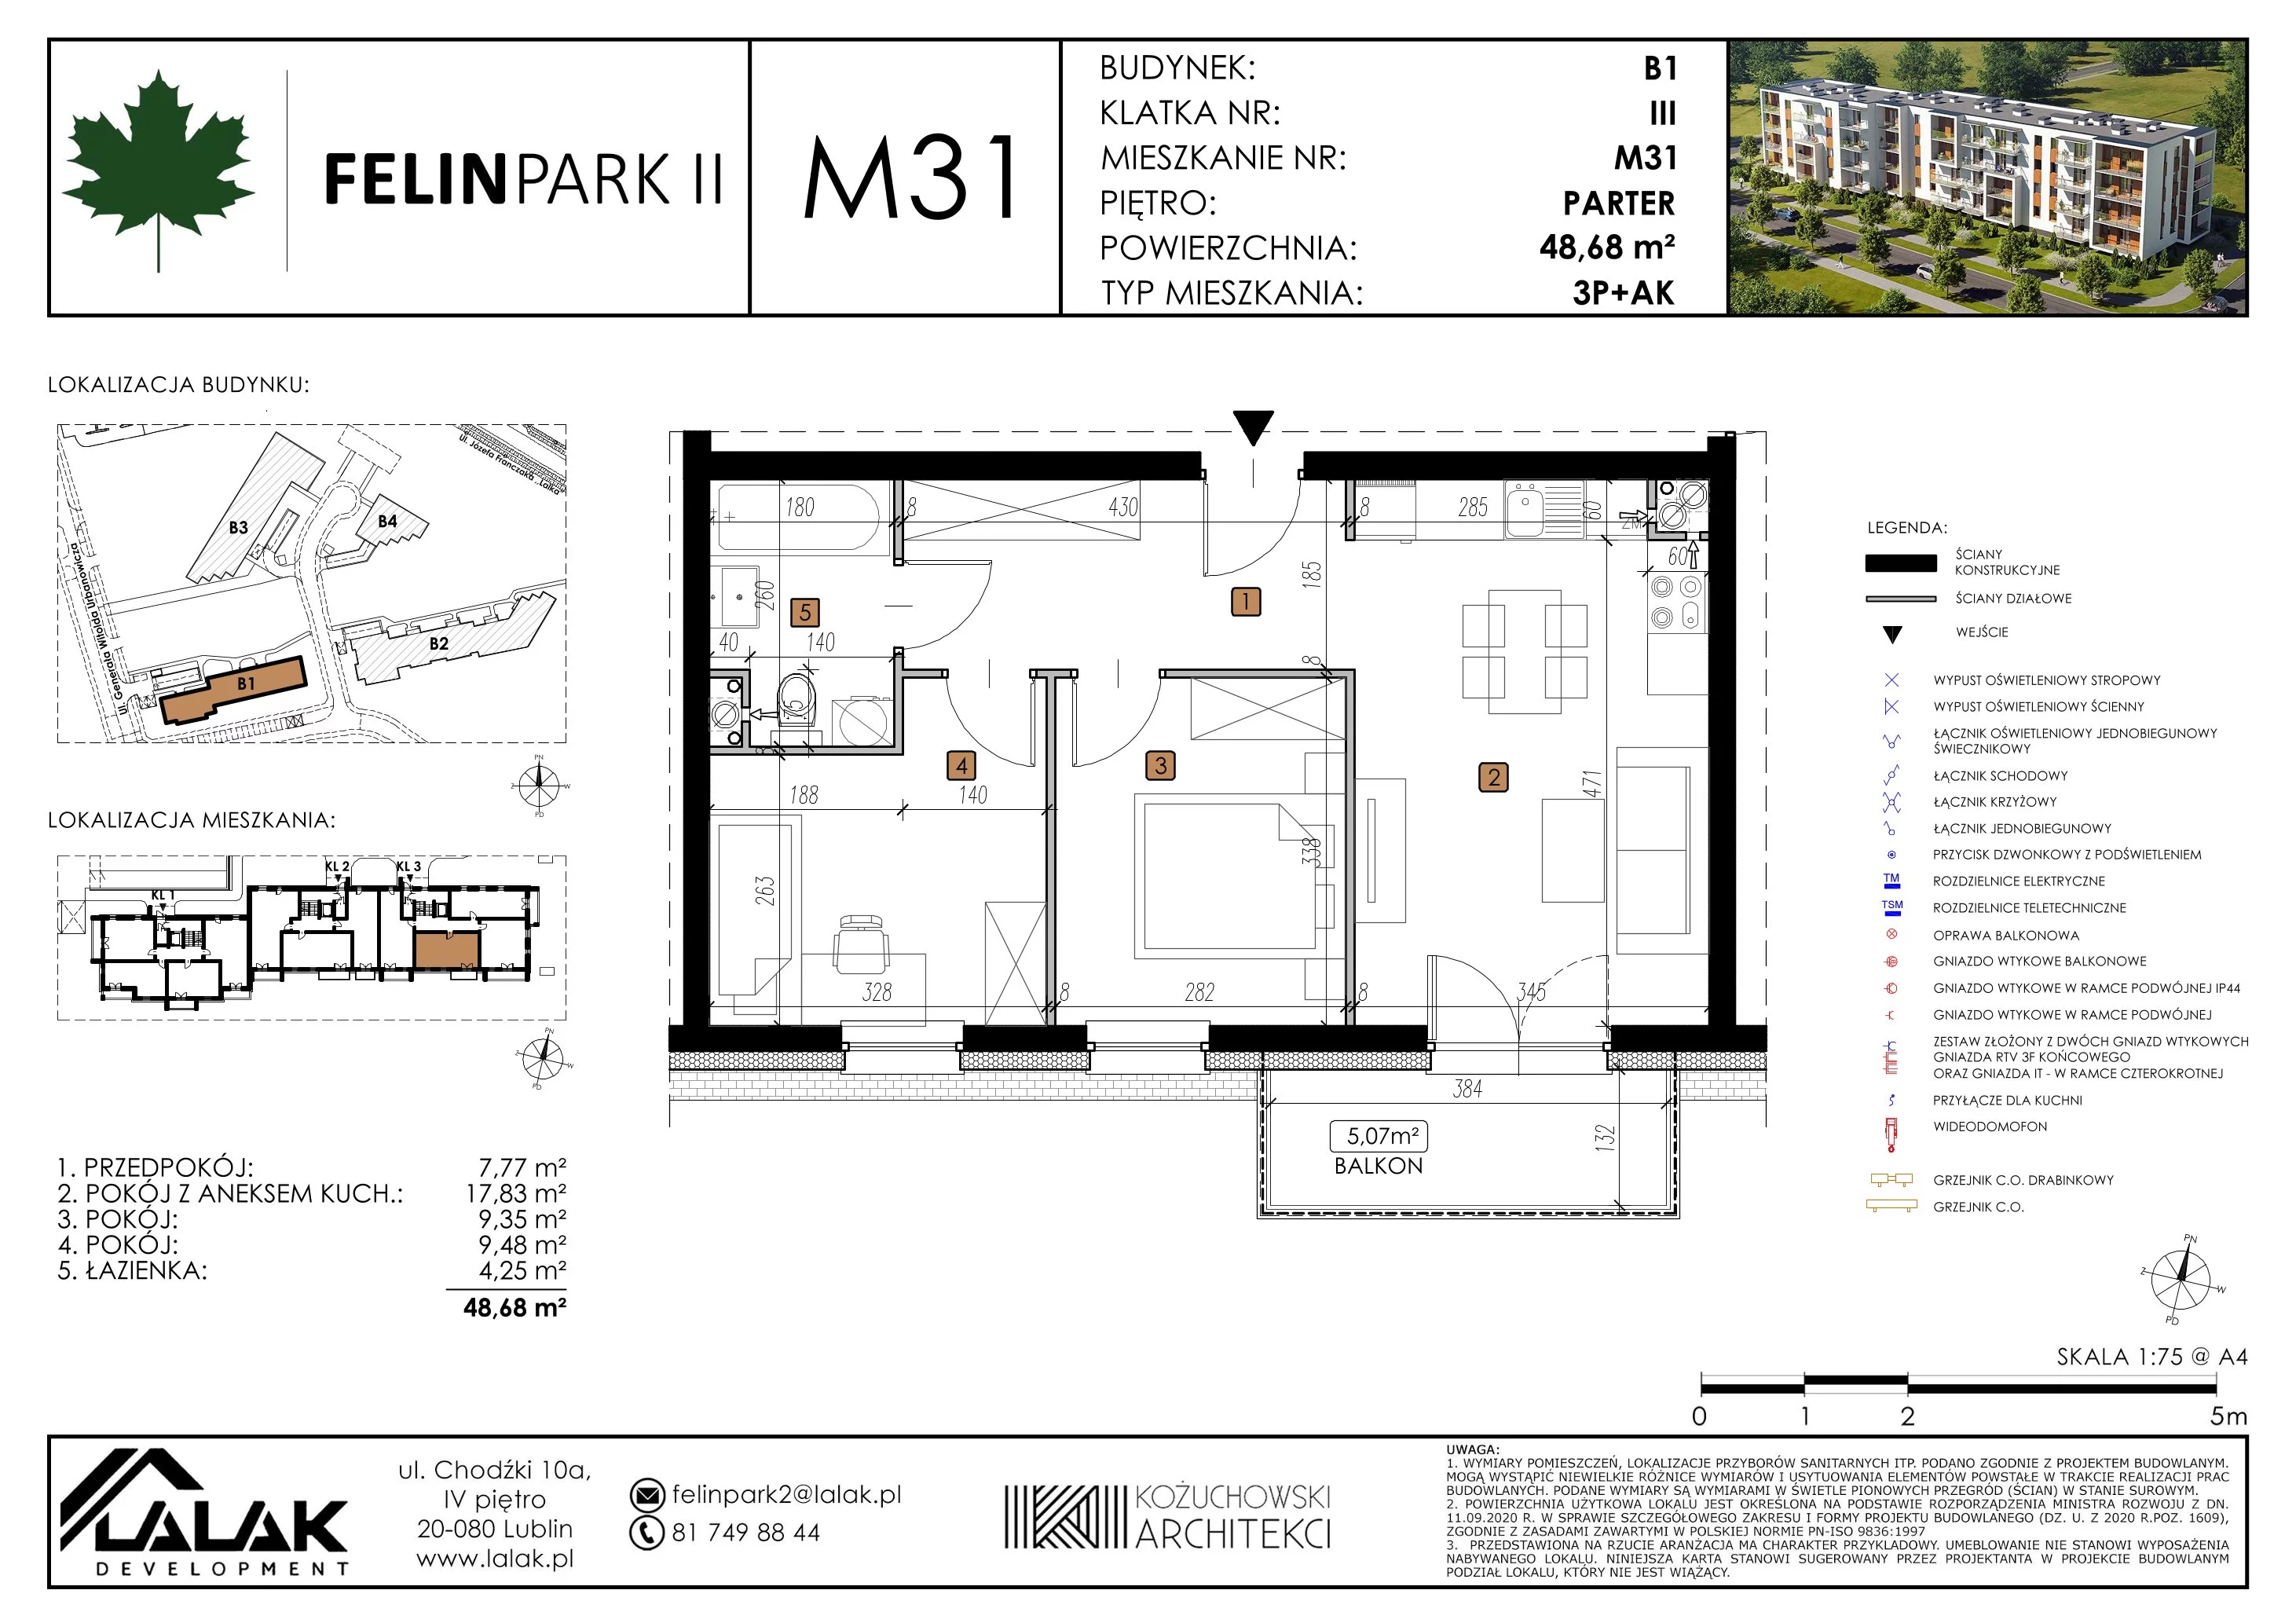 Mieszkanie 48,55 m², parter, oferta nr B1_M31/P, Felin Park II, Lublin, Felin, ul. gen. Stanisława Skalskiego 8-10